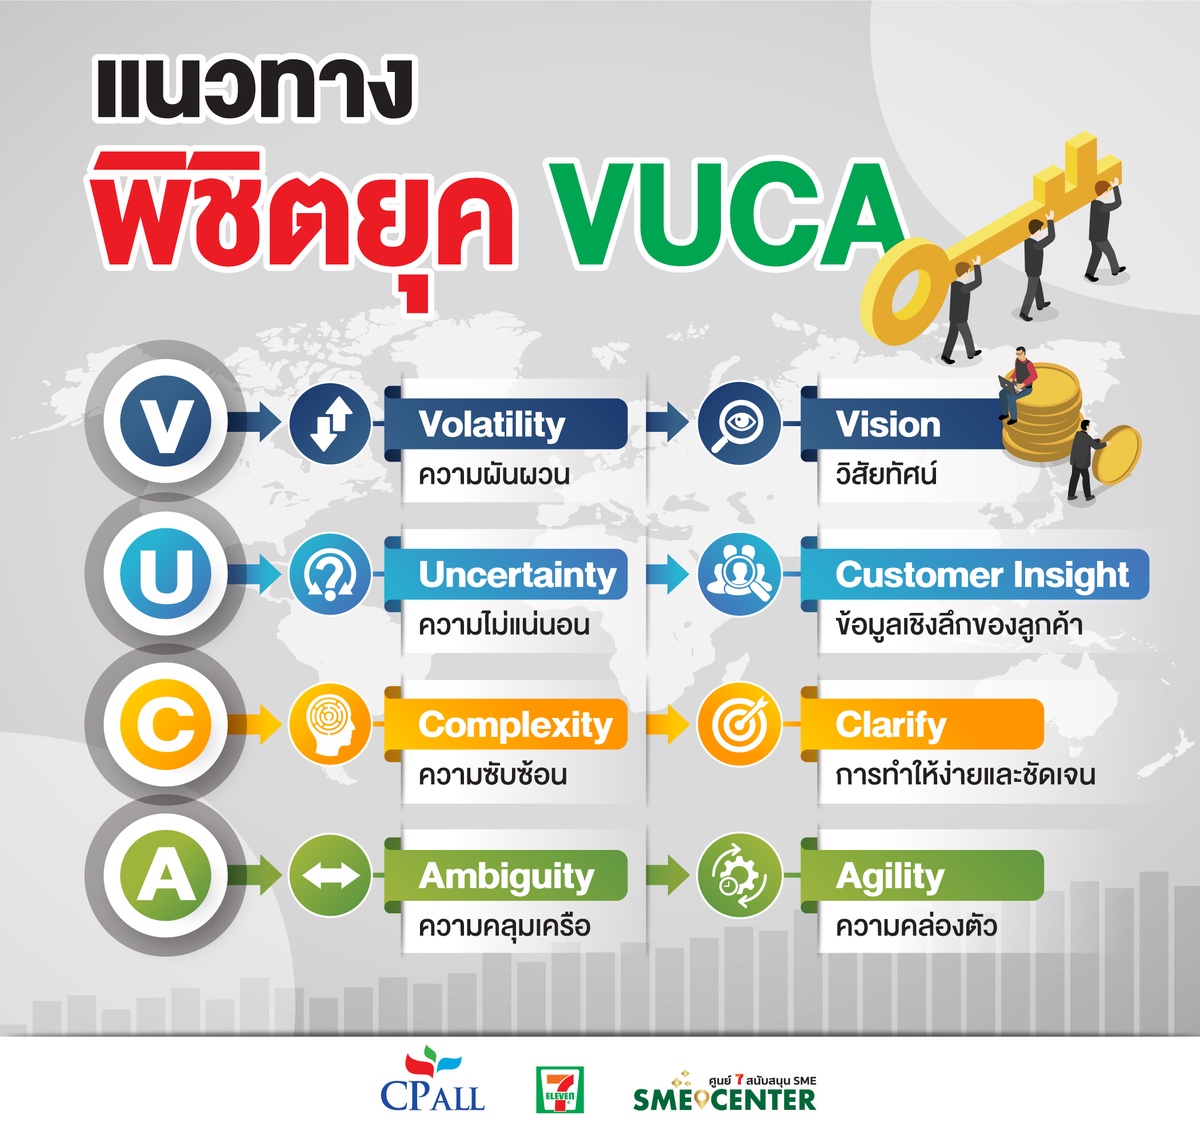 เปิดแนวทาง SME พิชิตยุค VUCA World เซเว่นฯ แนะเคล็ดลับยกระดับองค์กรขนาดย่อมสู่ธุรกิจขับเคลื่อนด้วย นวัตกรรม